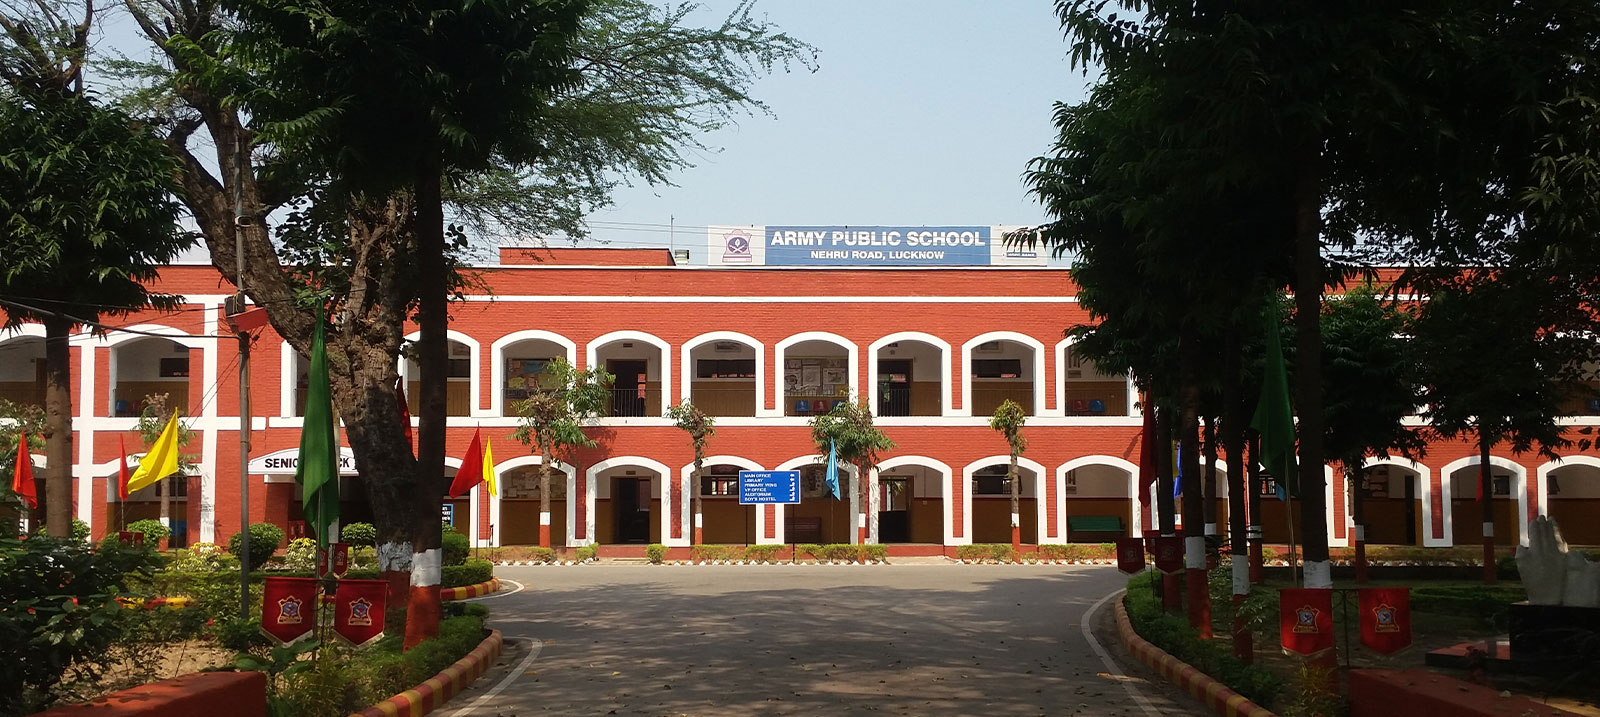 Army Public School, Lucknow